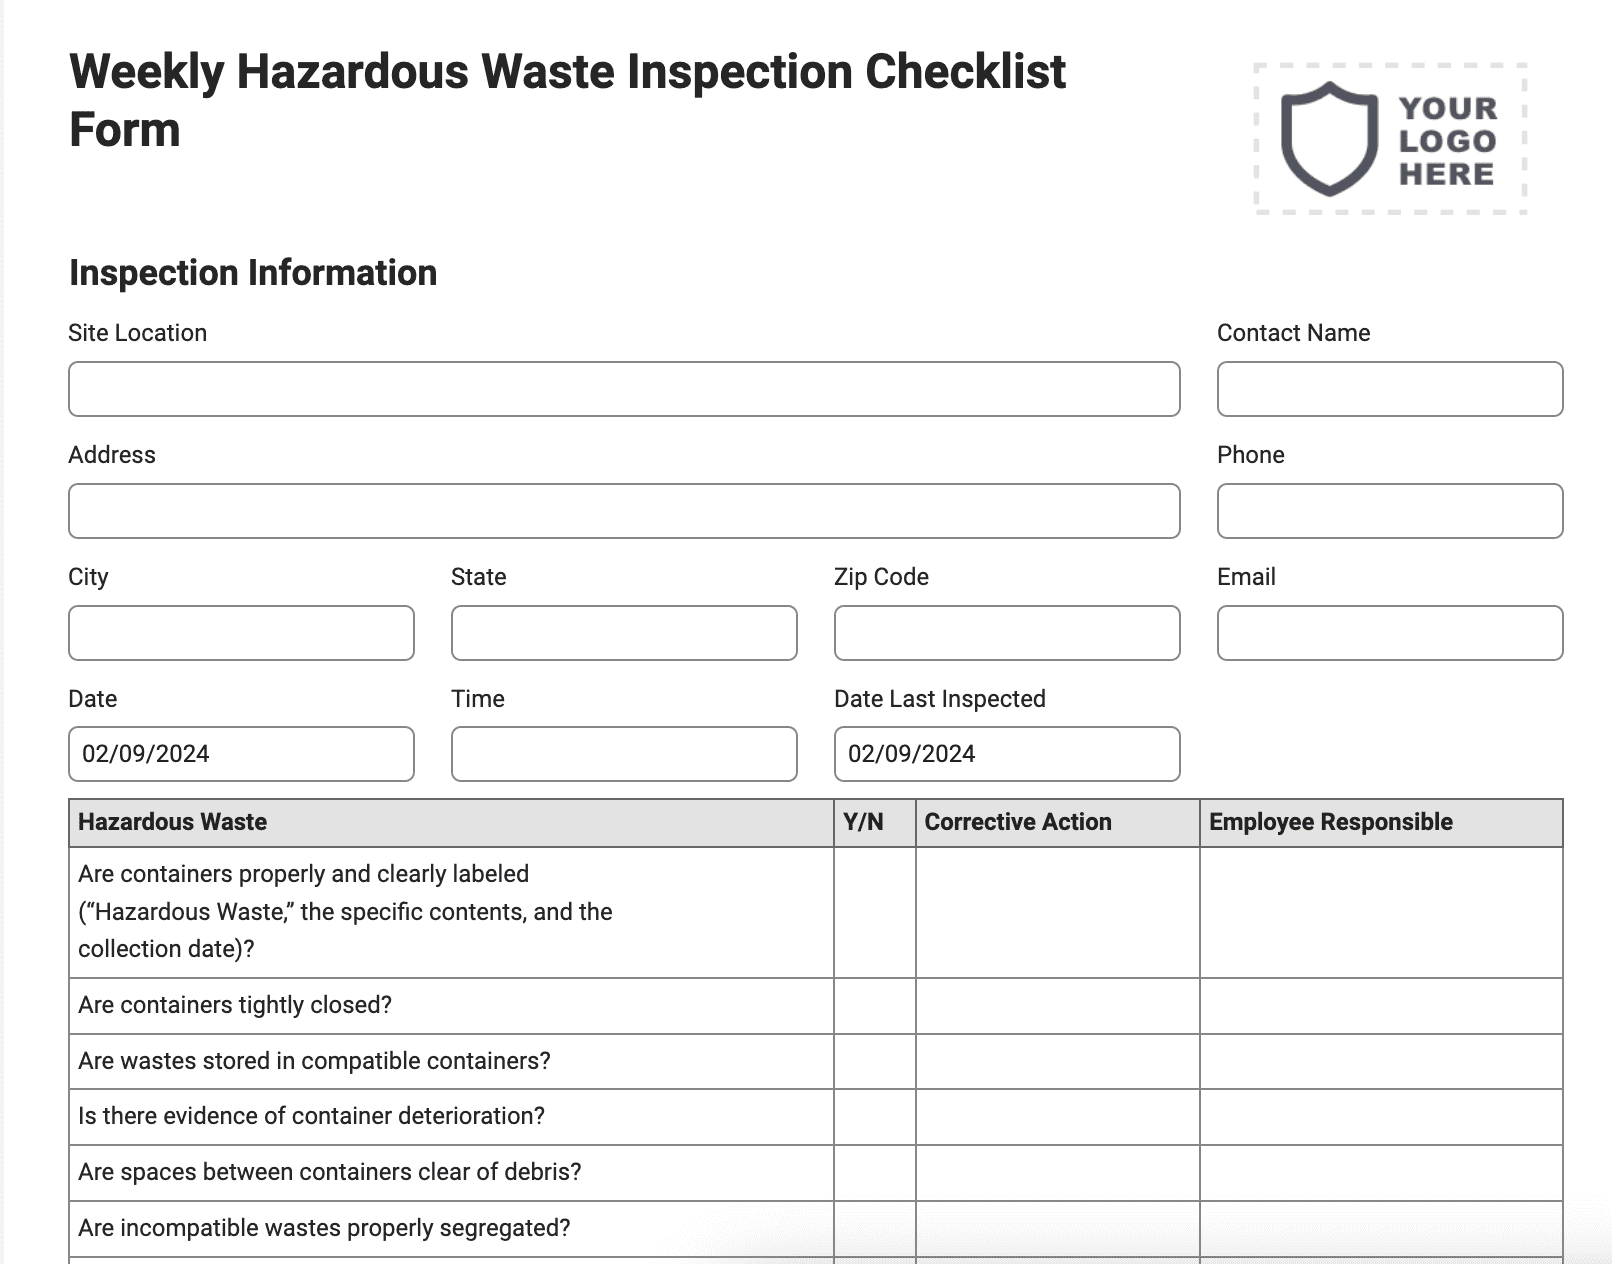 Weekly Hazardous Waste Inspection Checklist Form